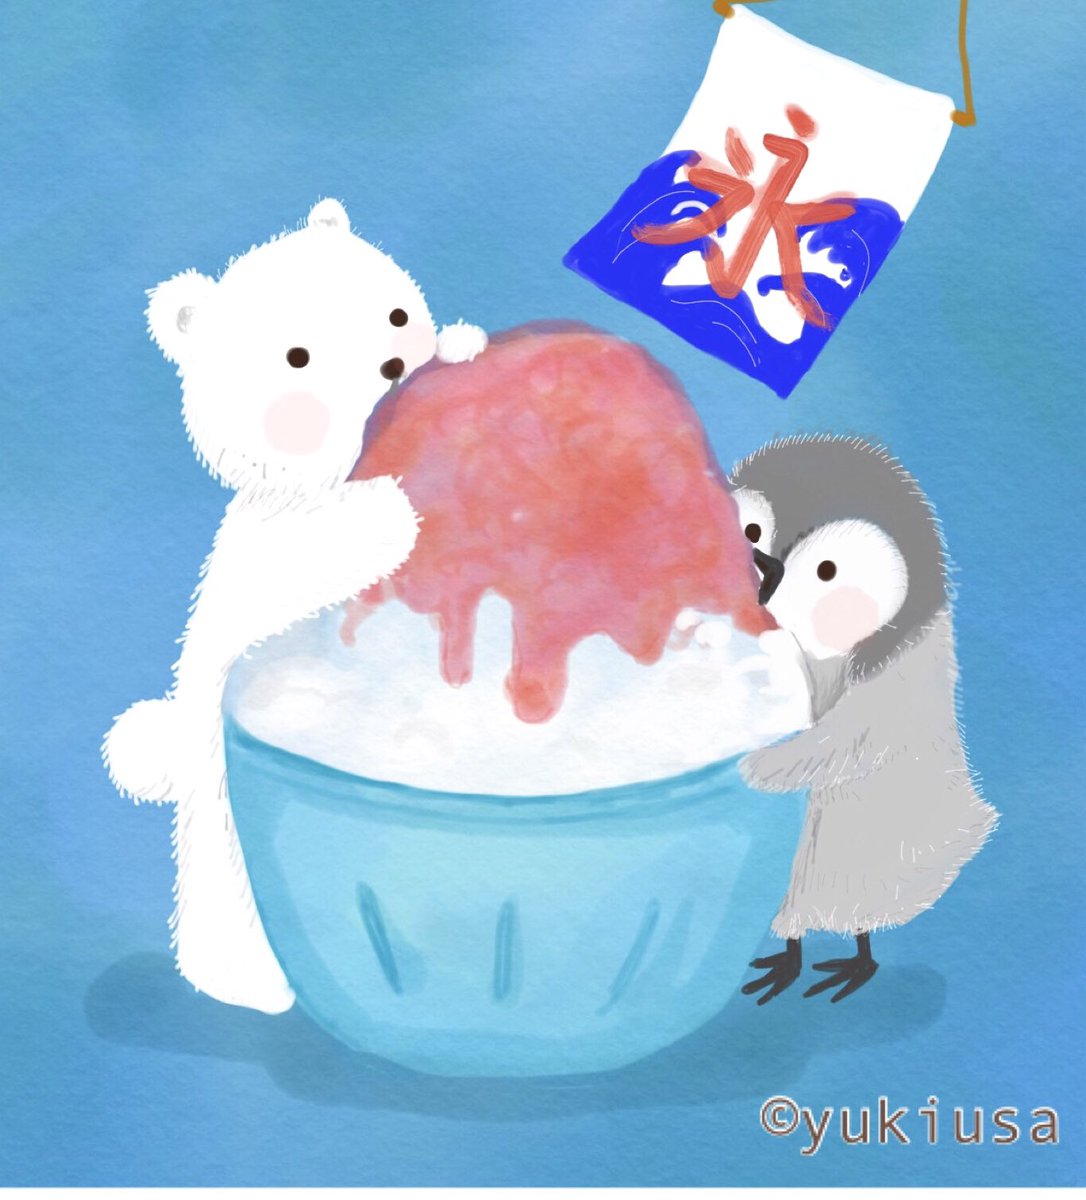 ゆきうさ イラスト えほん Twitter પર お客様 お待たせいたしました いちごかき氷です 暑いので 味見させてくれますか ʕ ᴥ ʔ イラスト かき氷 しろくま ペンギン Illustration Illustrator Penguin Polarbear T Co Rs5ufrhmoq Twitter